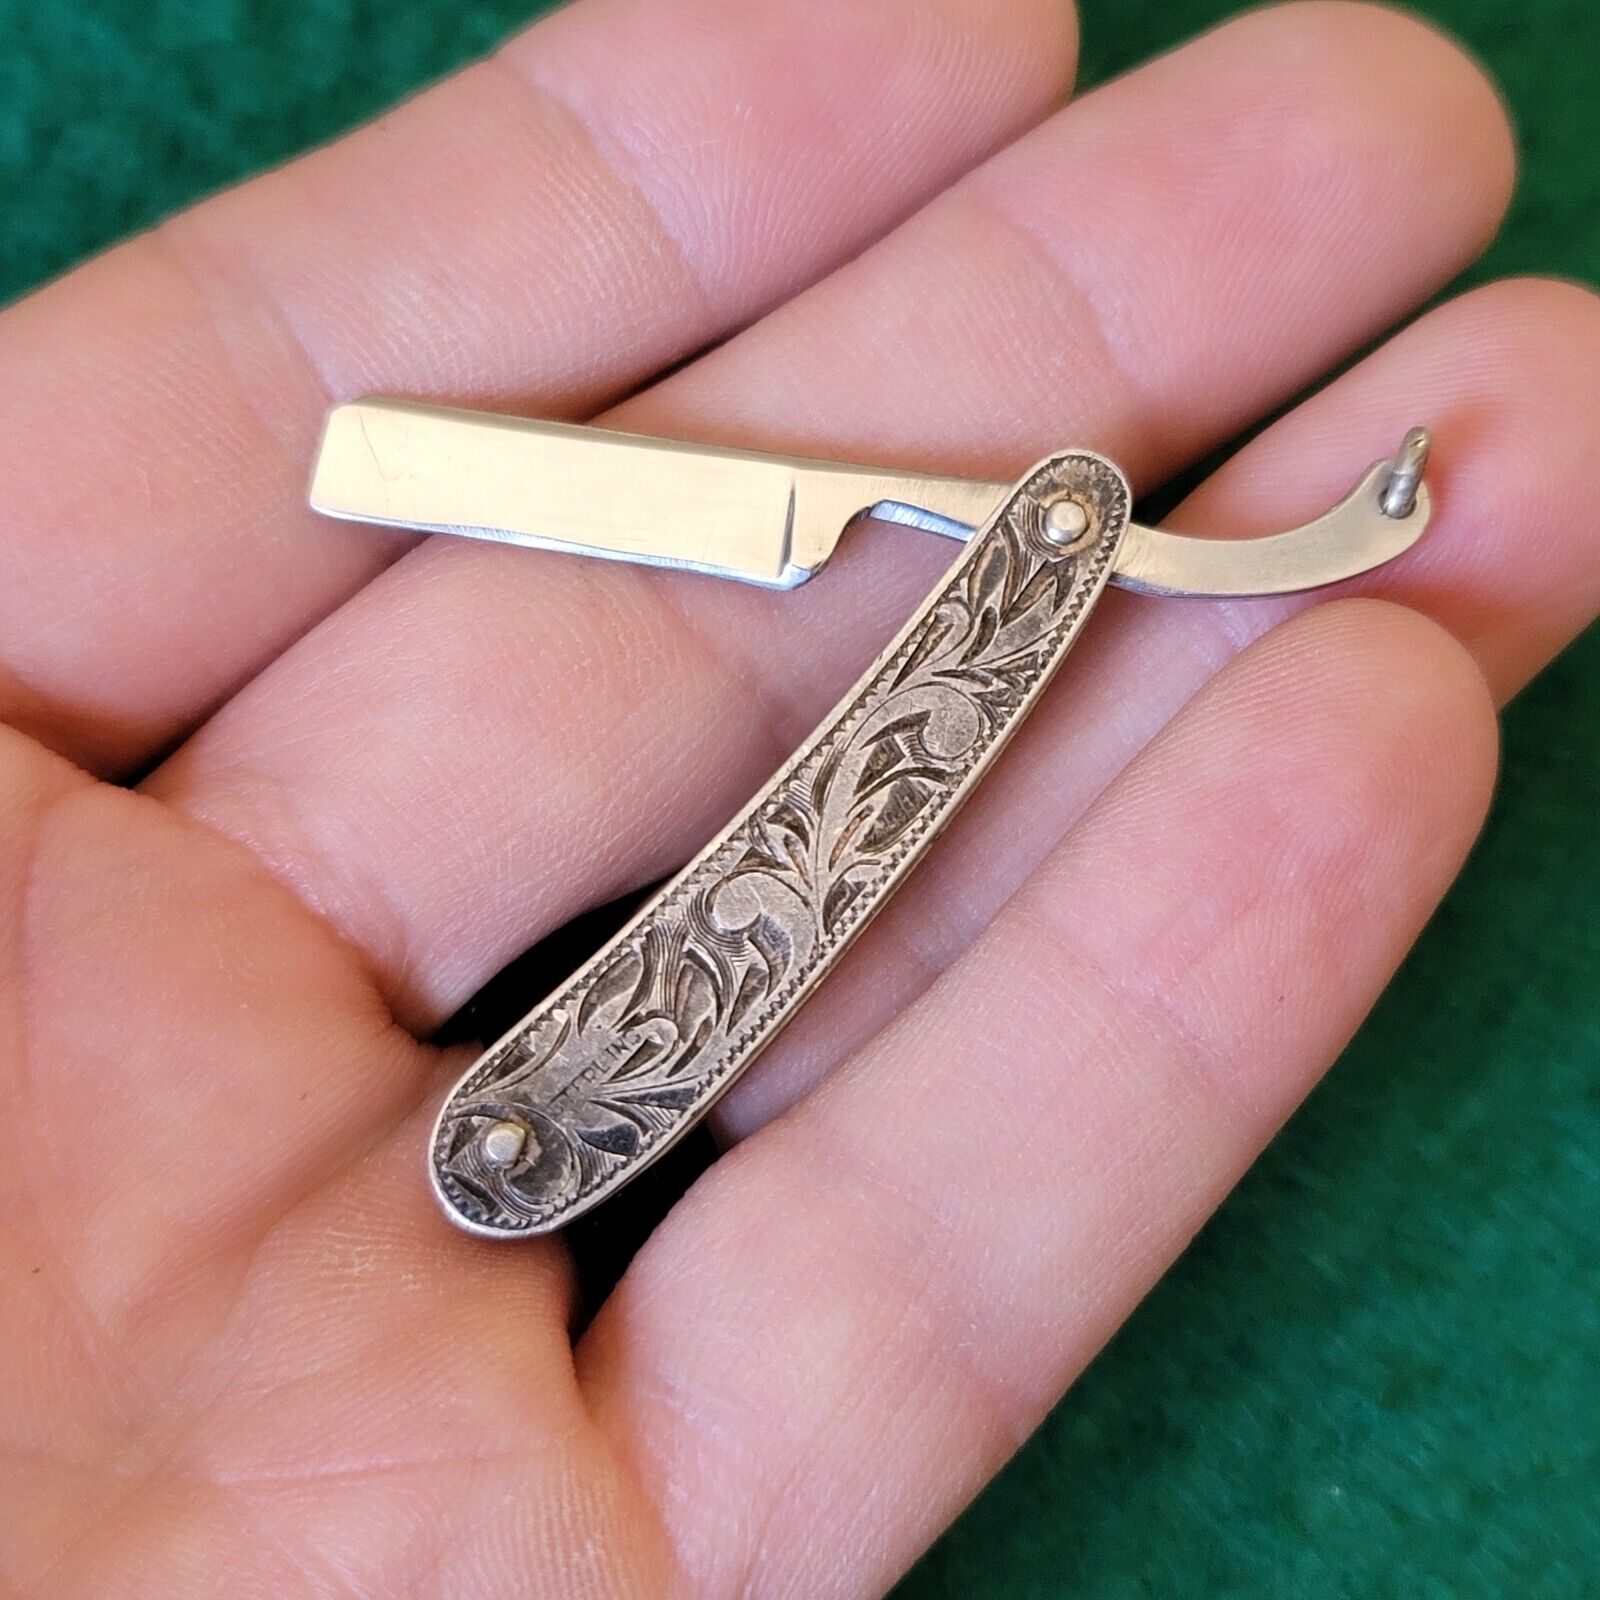 Old Antique Japanese Etched Neck Knife Straight Razor Pocket Knife Sterling